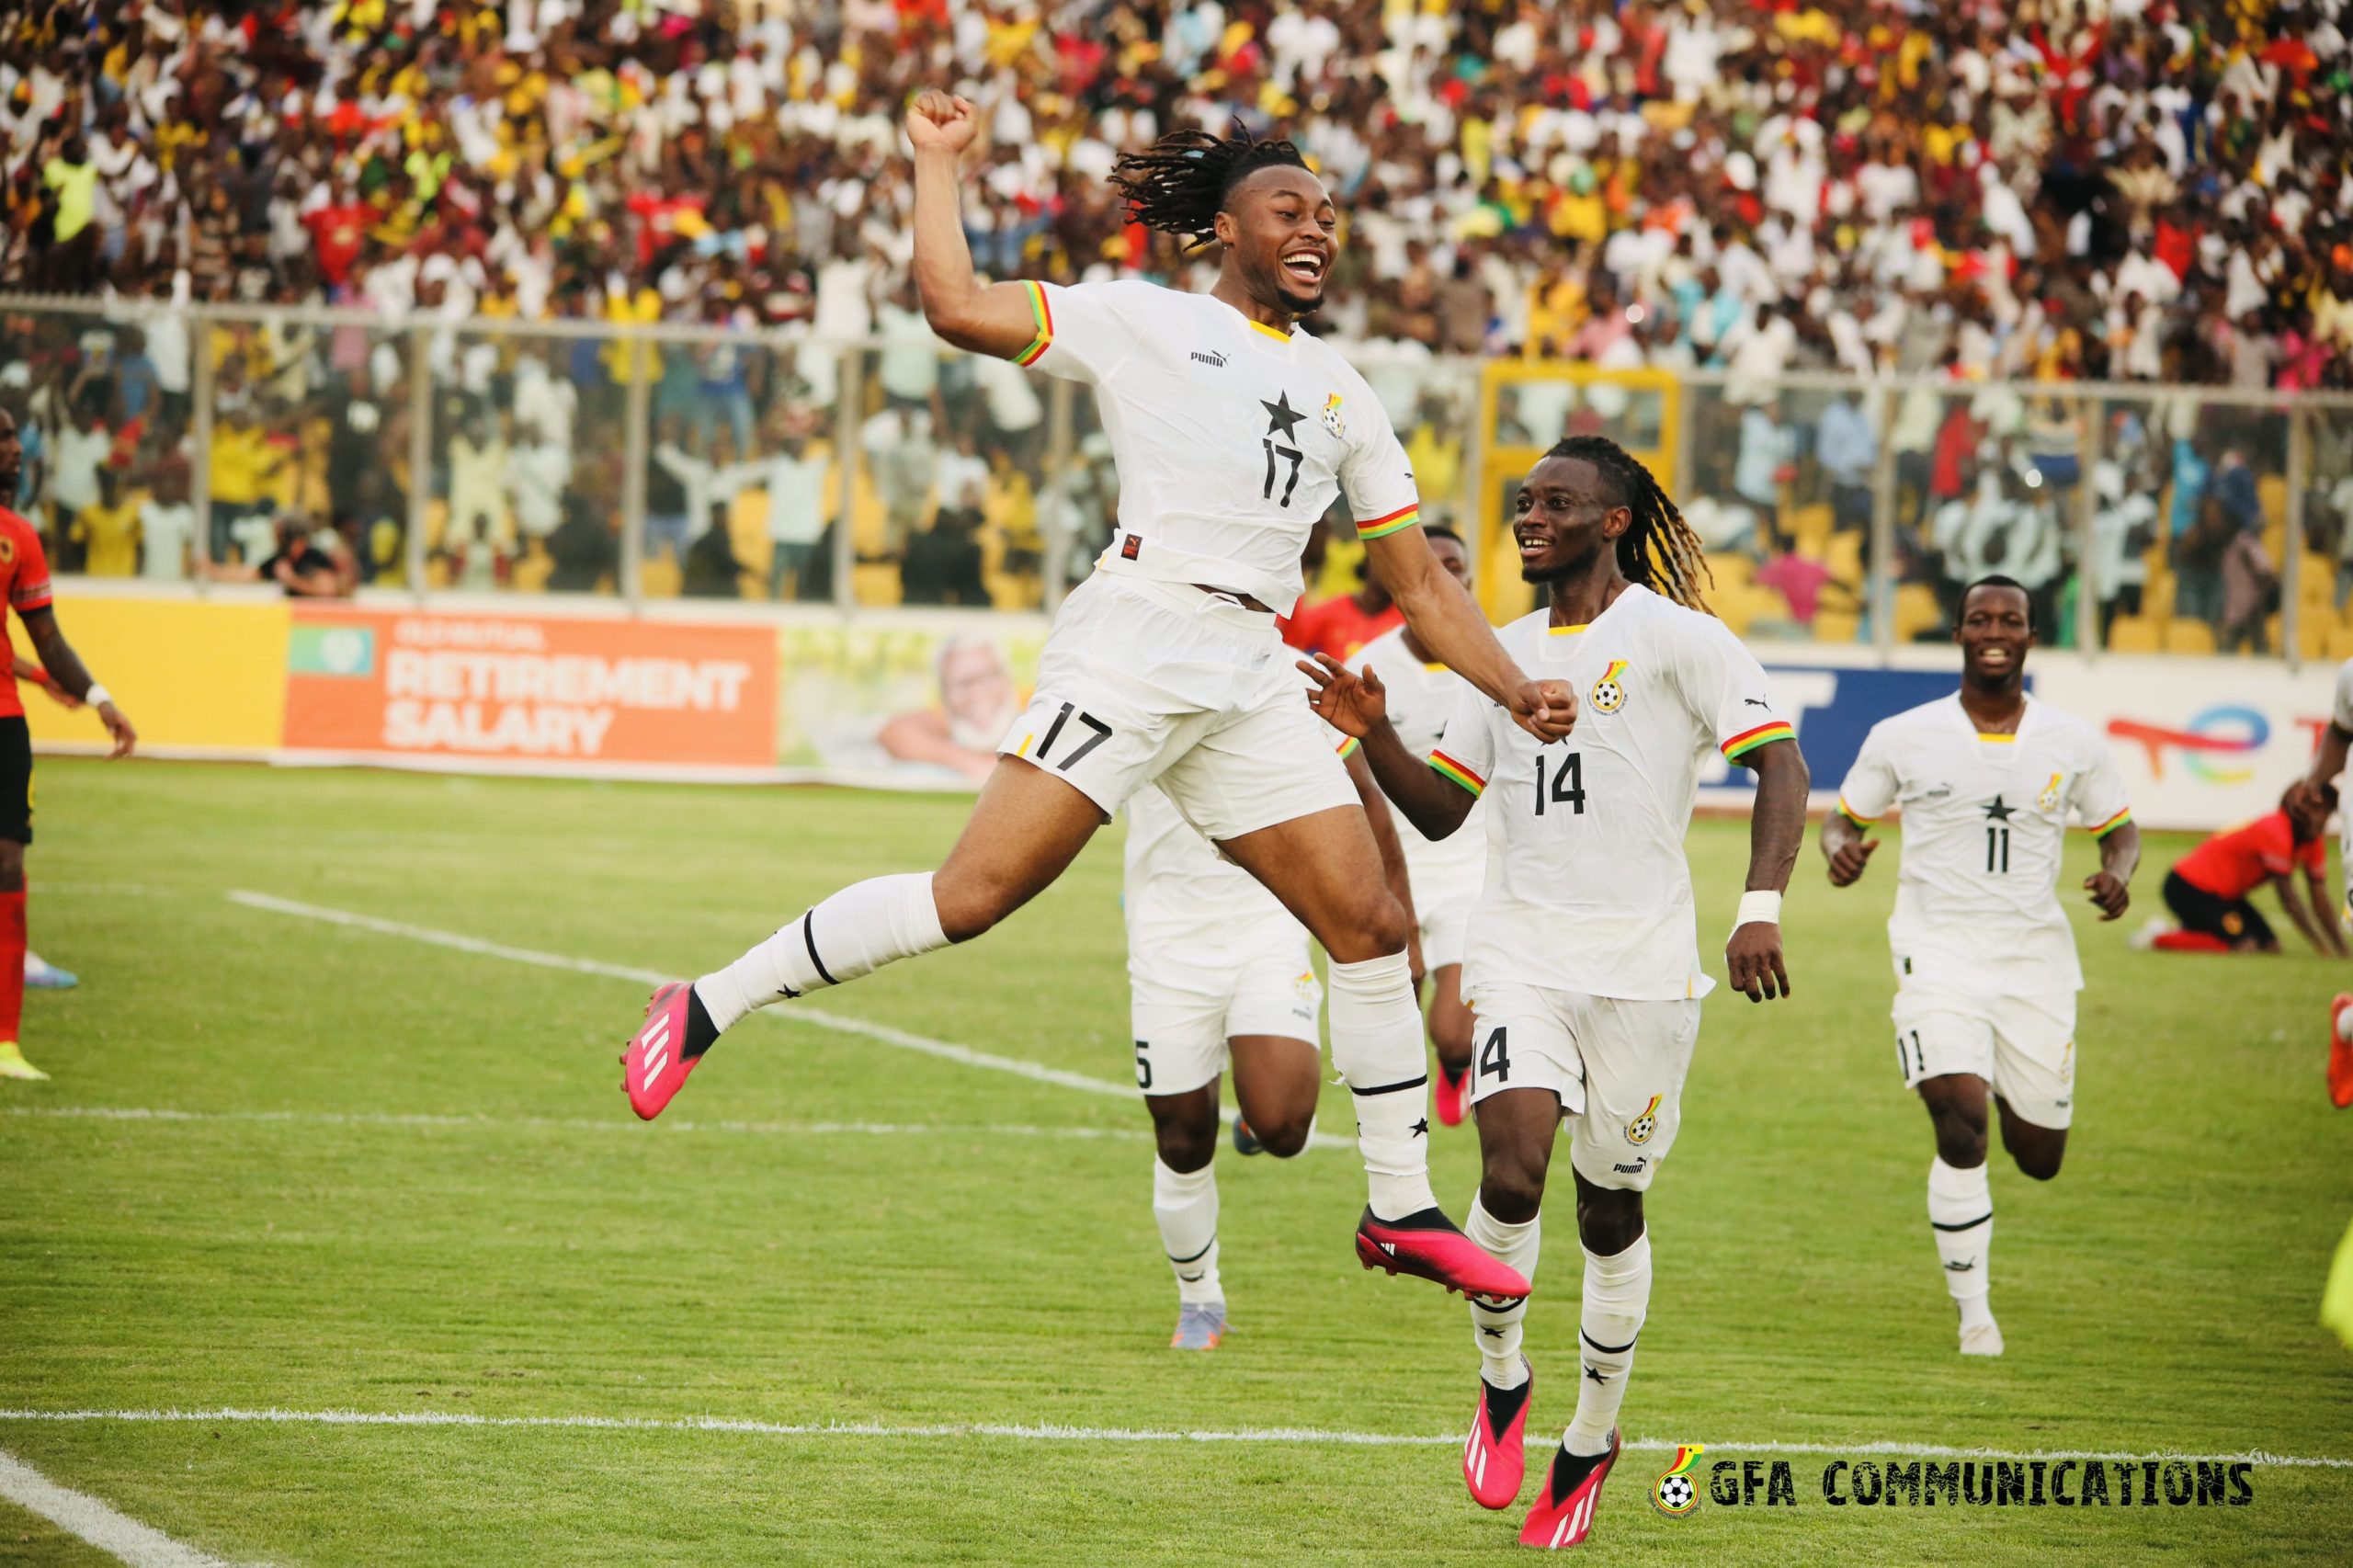 Video: Asamoah Gyan gives Antoine Semenyo attacking tips after Angola game